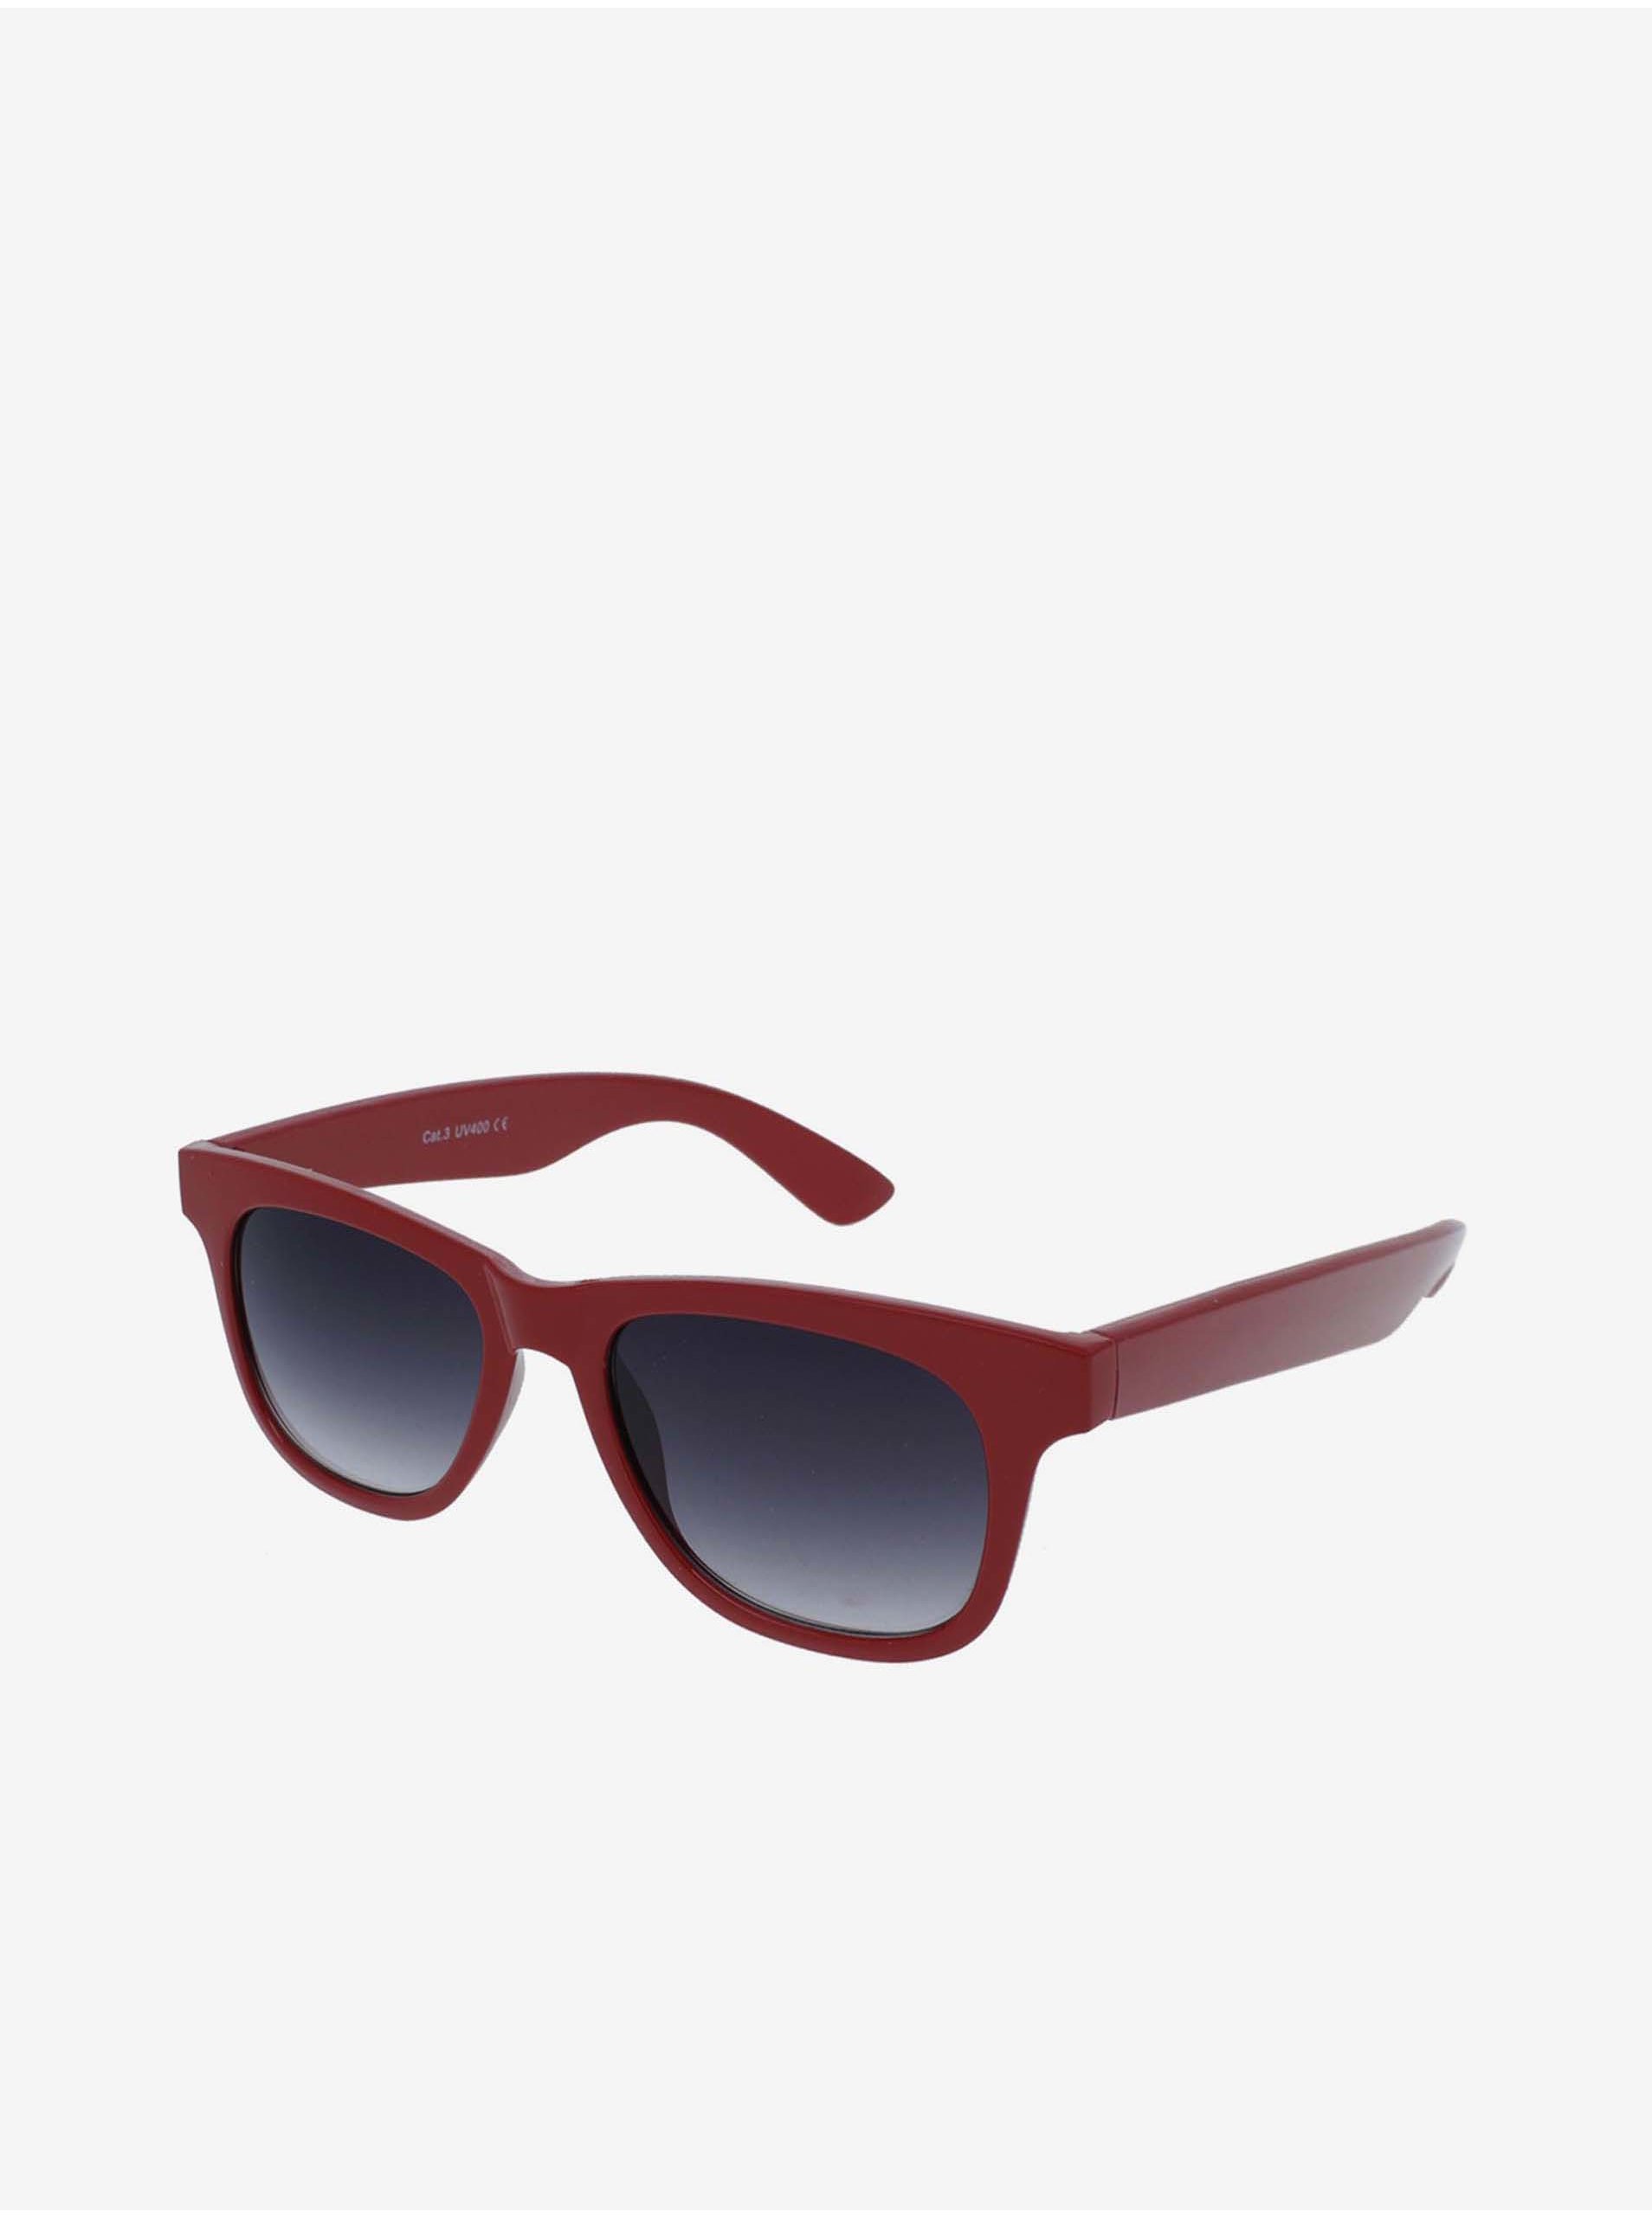 E-shop VeyRey Slnečné okuliare Nerd červené